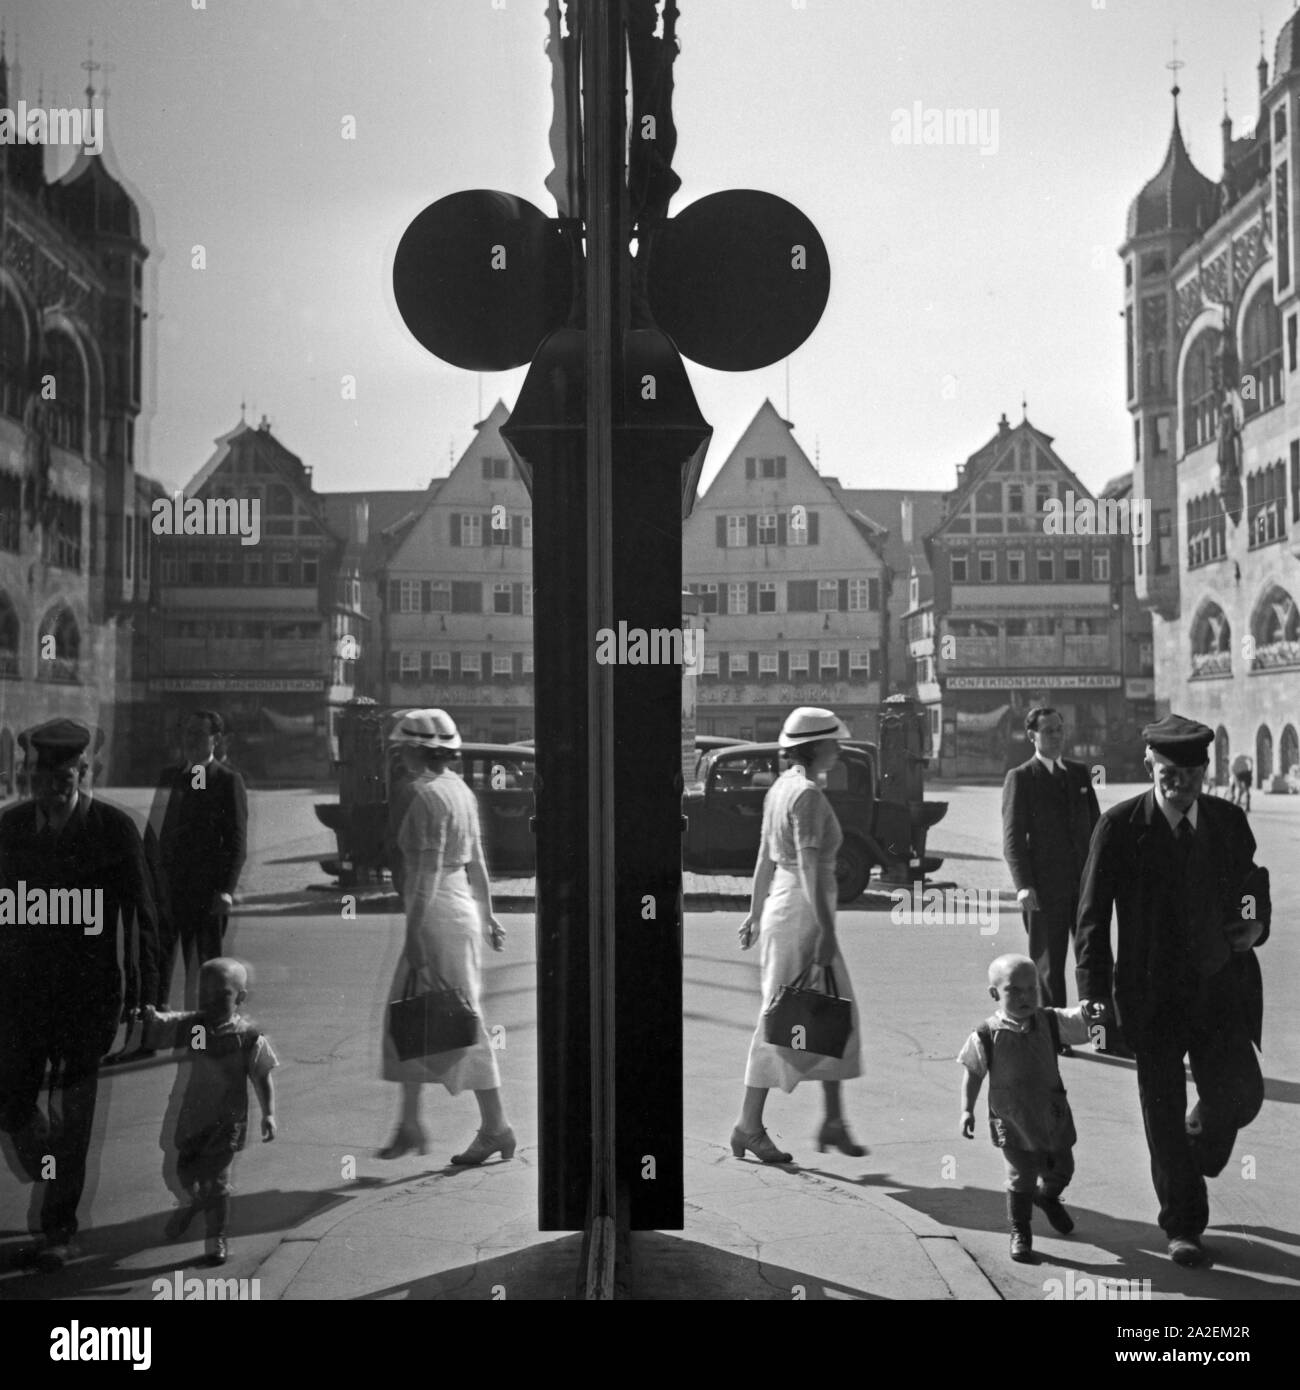 Passanten spiegeln sich im-Schaufenster eines Geschäfts am Marktplatz in Stuttgart, Deutschland, 1930er Jahre. Passanten in einem Schaufenster am Markt widerspiegeln in der Stadt Stuttgart, Deutschland 1930. Stockfoto